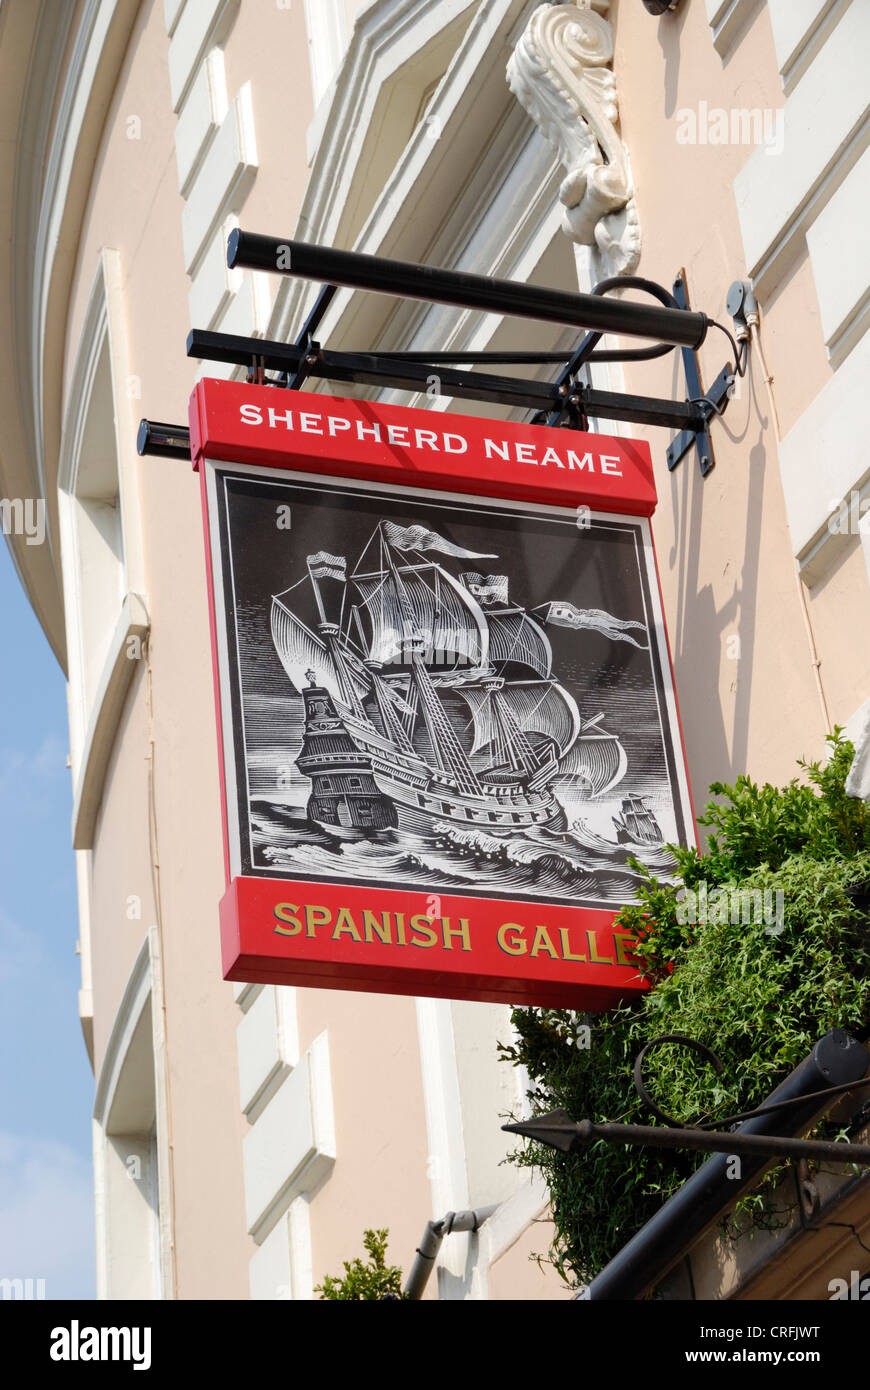 Le Galion espagnol pub dans Greenwich, London, UK Banque D'Images